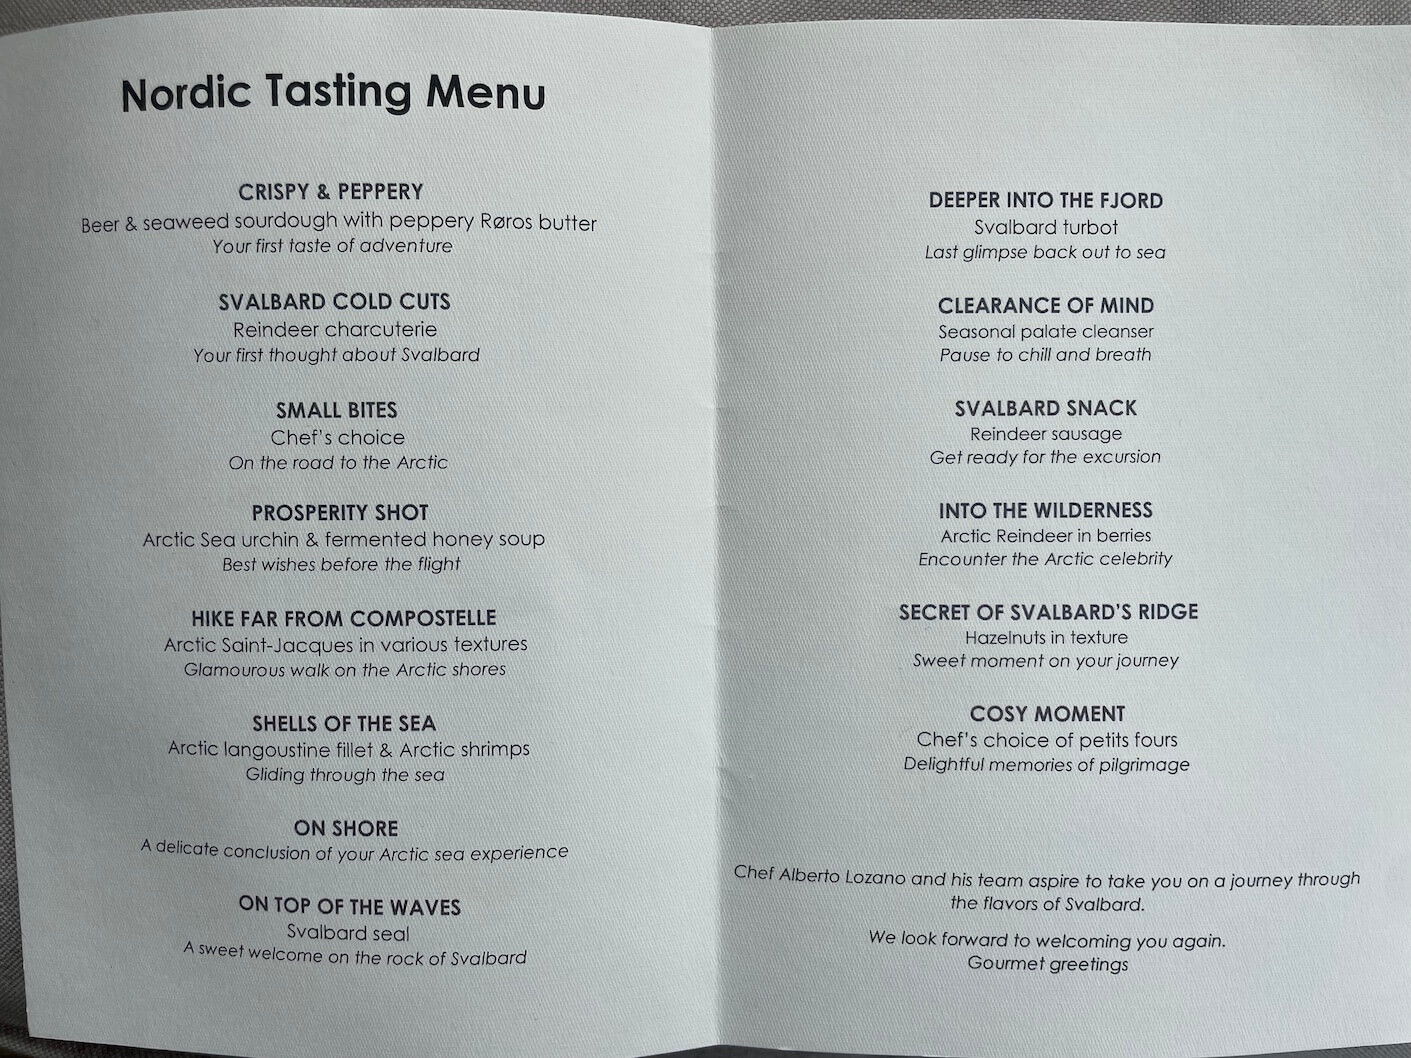 Nordic Tasting Menu at Huset